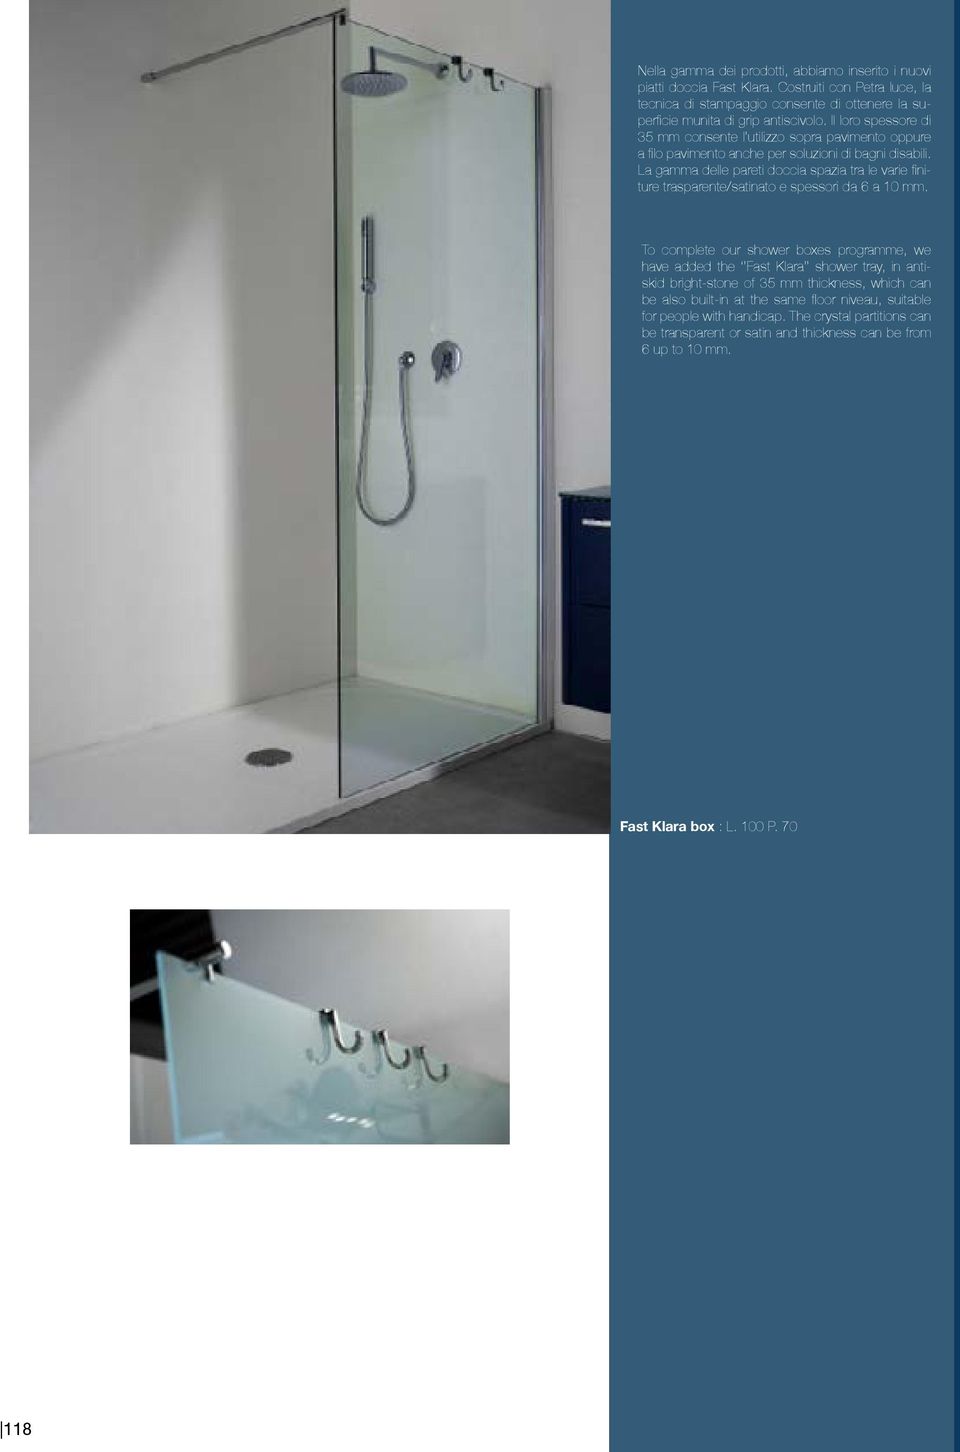 La gamma delle pareti doccia spazia tra le varie finiture trasparente/satinato e spessori da 6 a 10 mm.